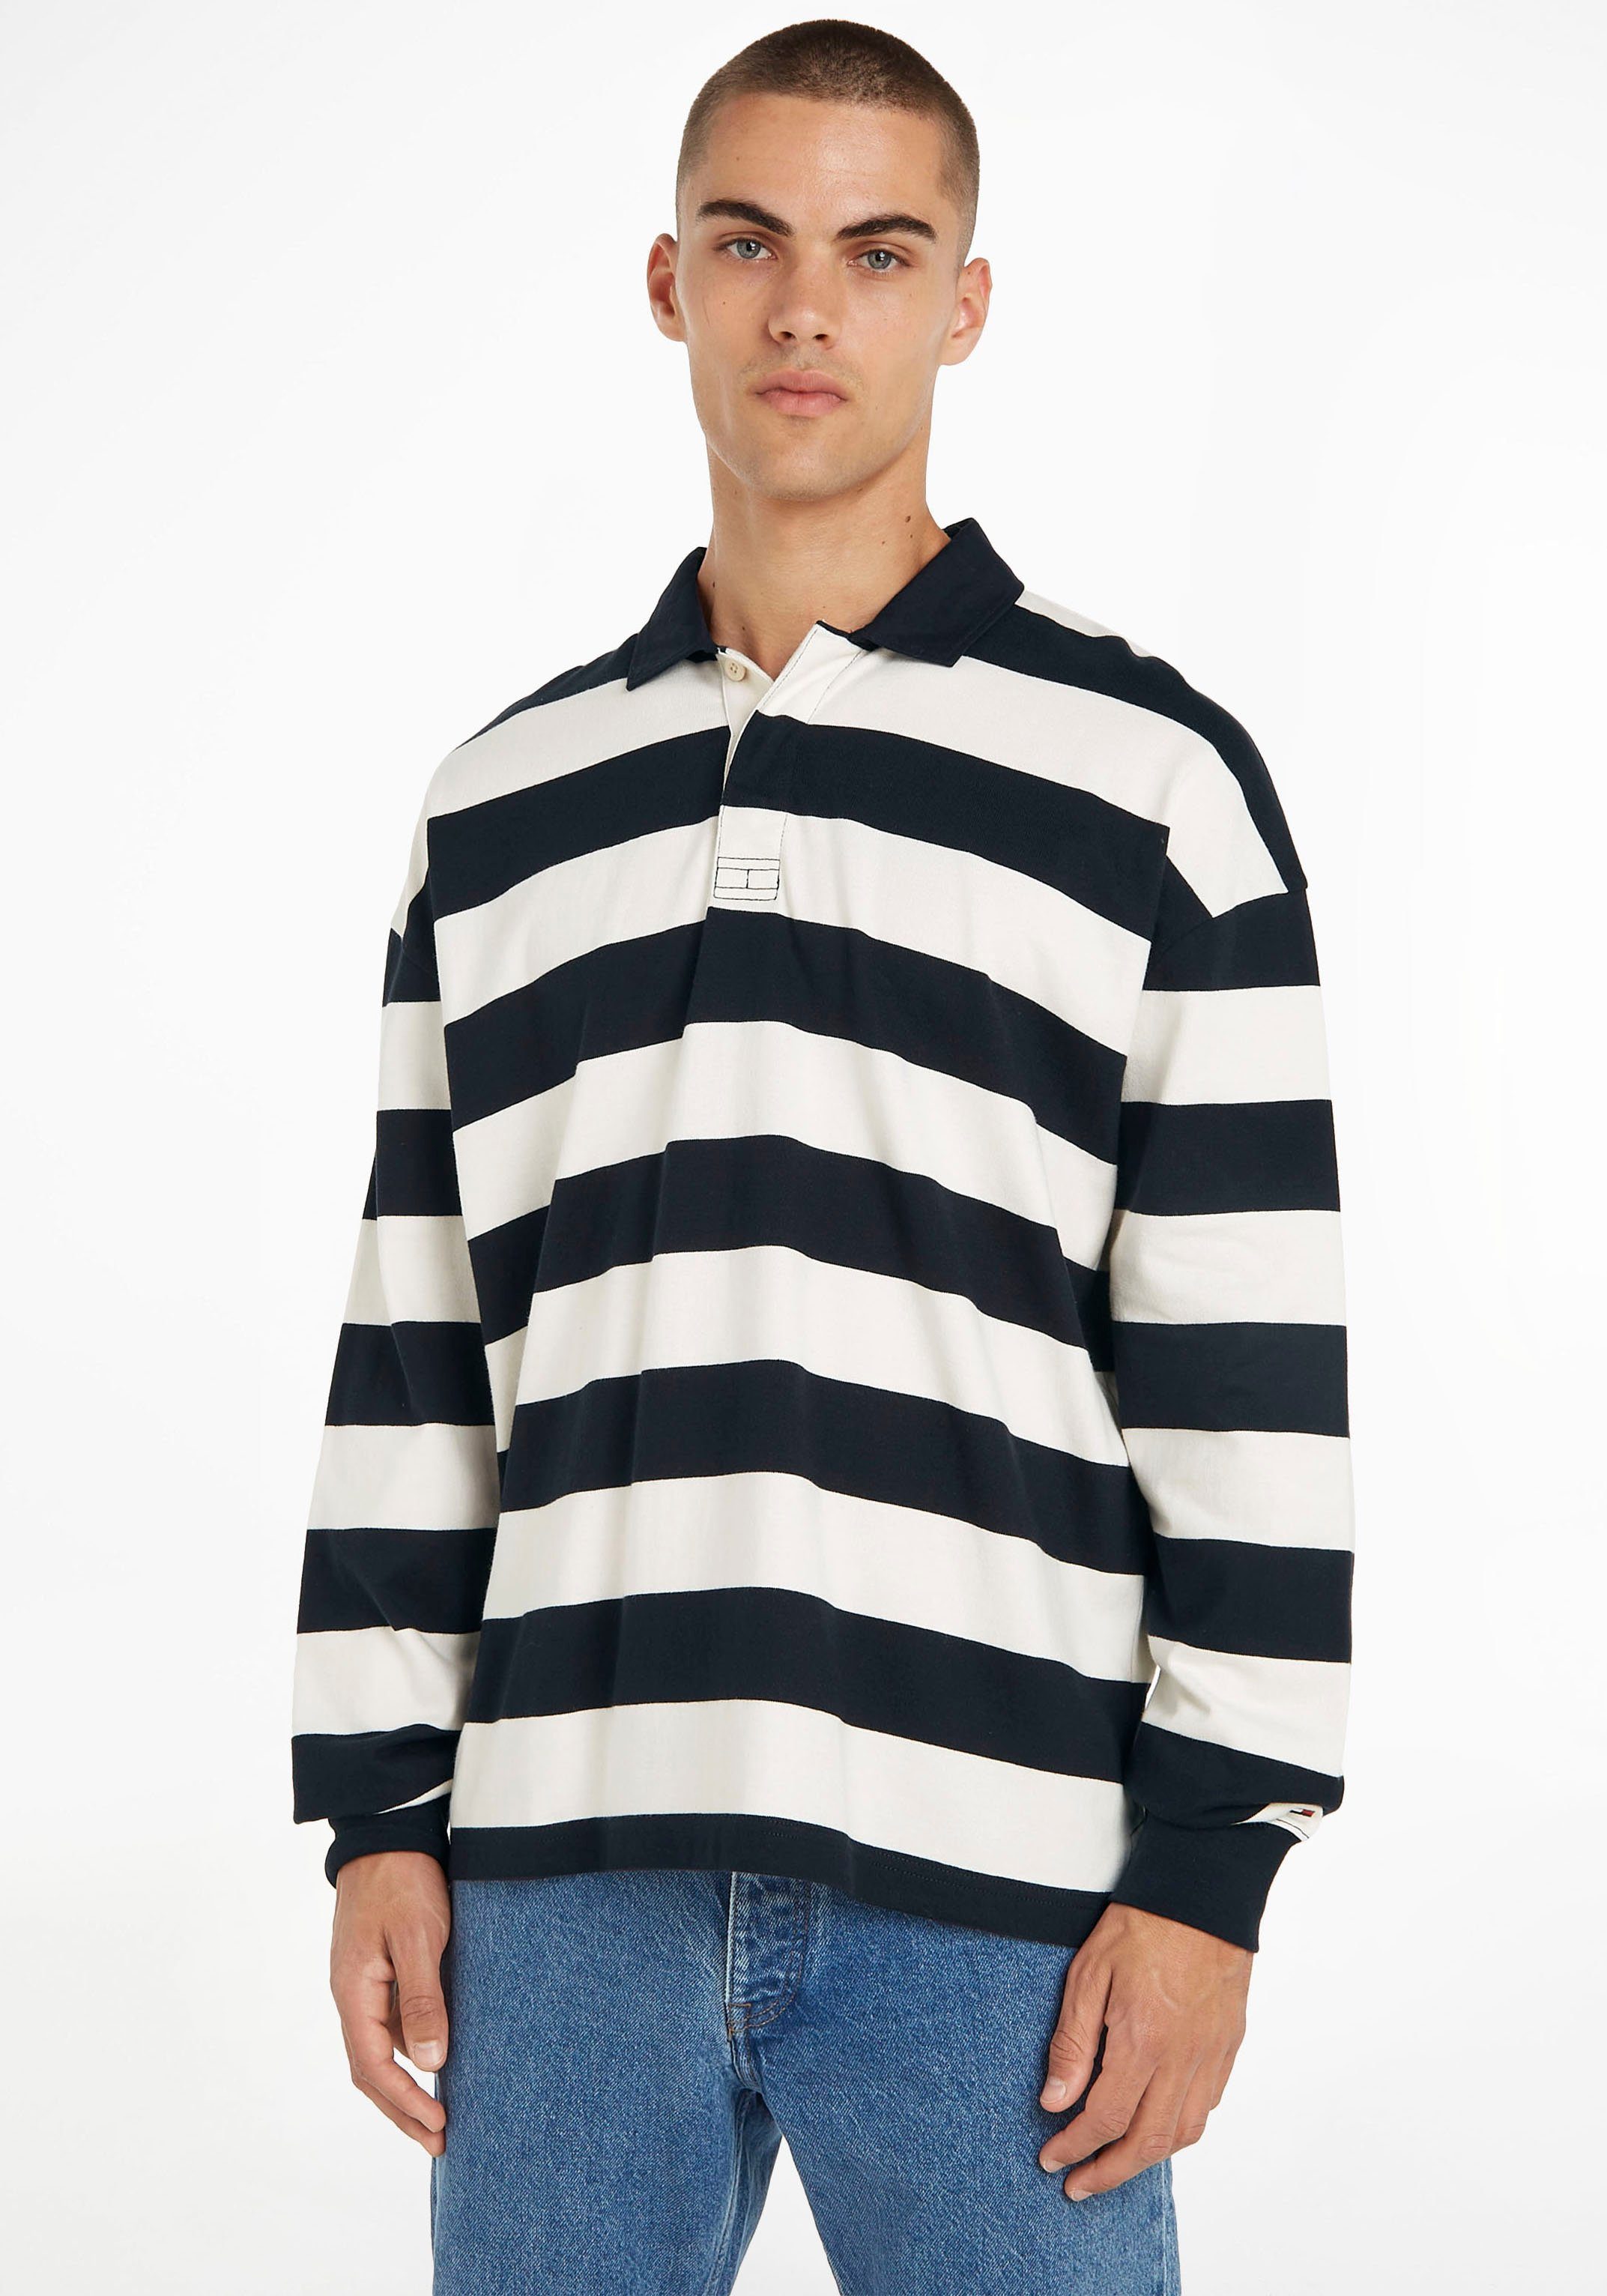 Sky RUGBY BLOCK STRIPED Ecru/Desert im Streifendesign Hilfiger Sweater Tommy